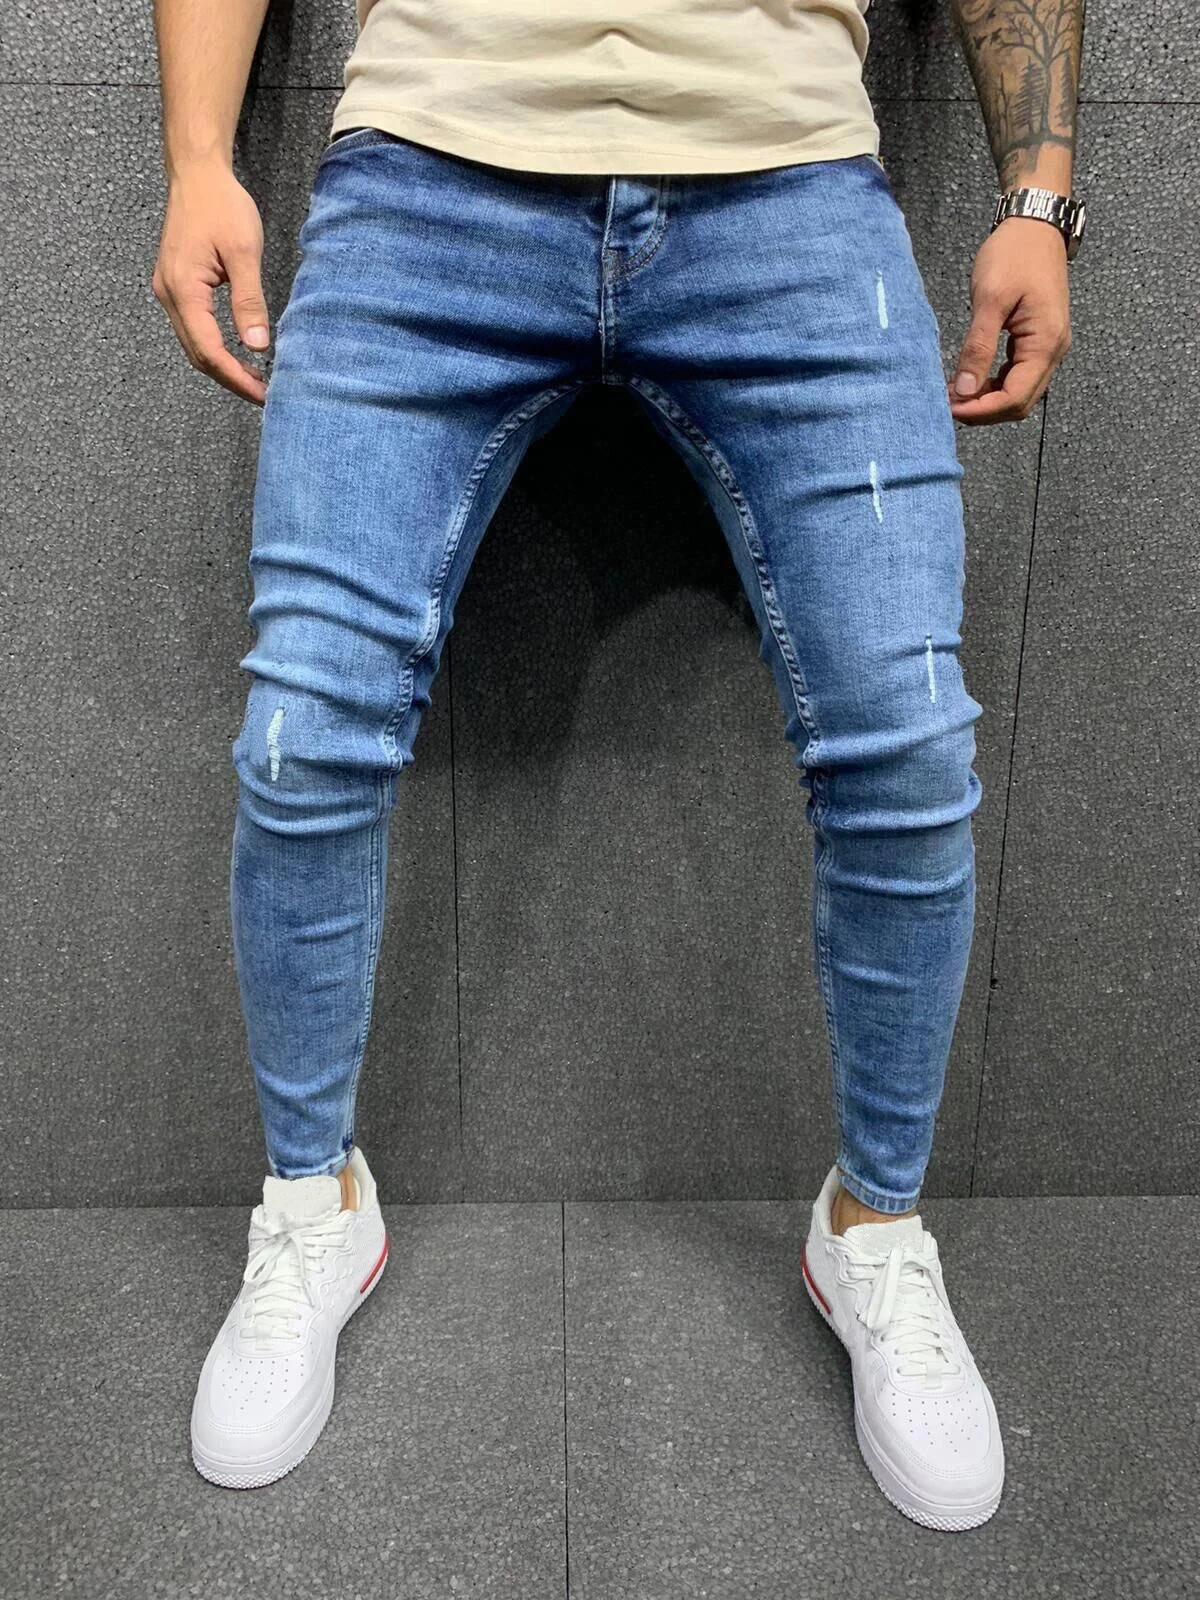 2022 Hot Sale Men Jeans Fashion Casual Slim Fit Trousers Male Vintage Wash Plus Size Pencil Pants Denim Jogger Jeans for Men